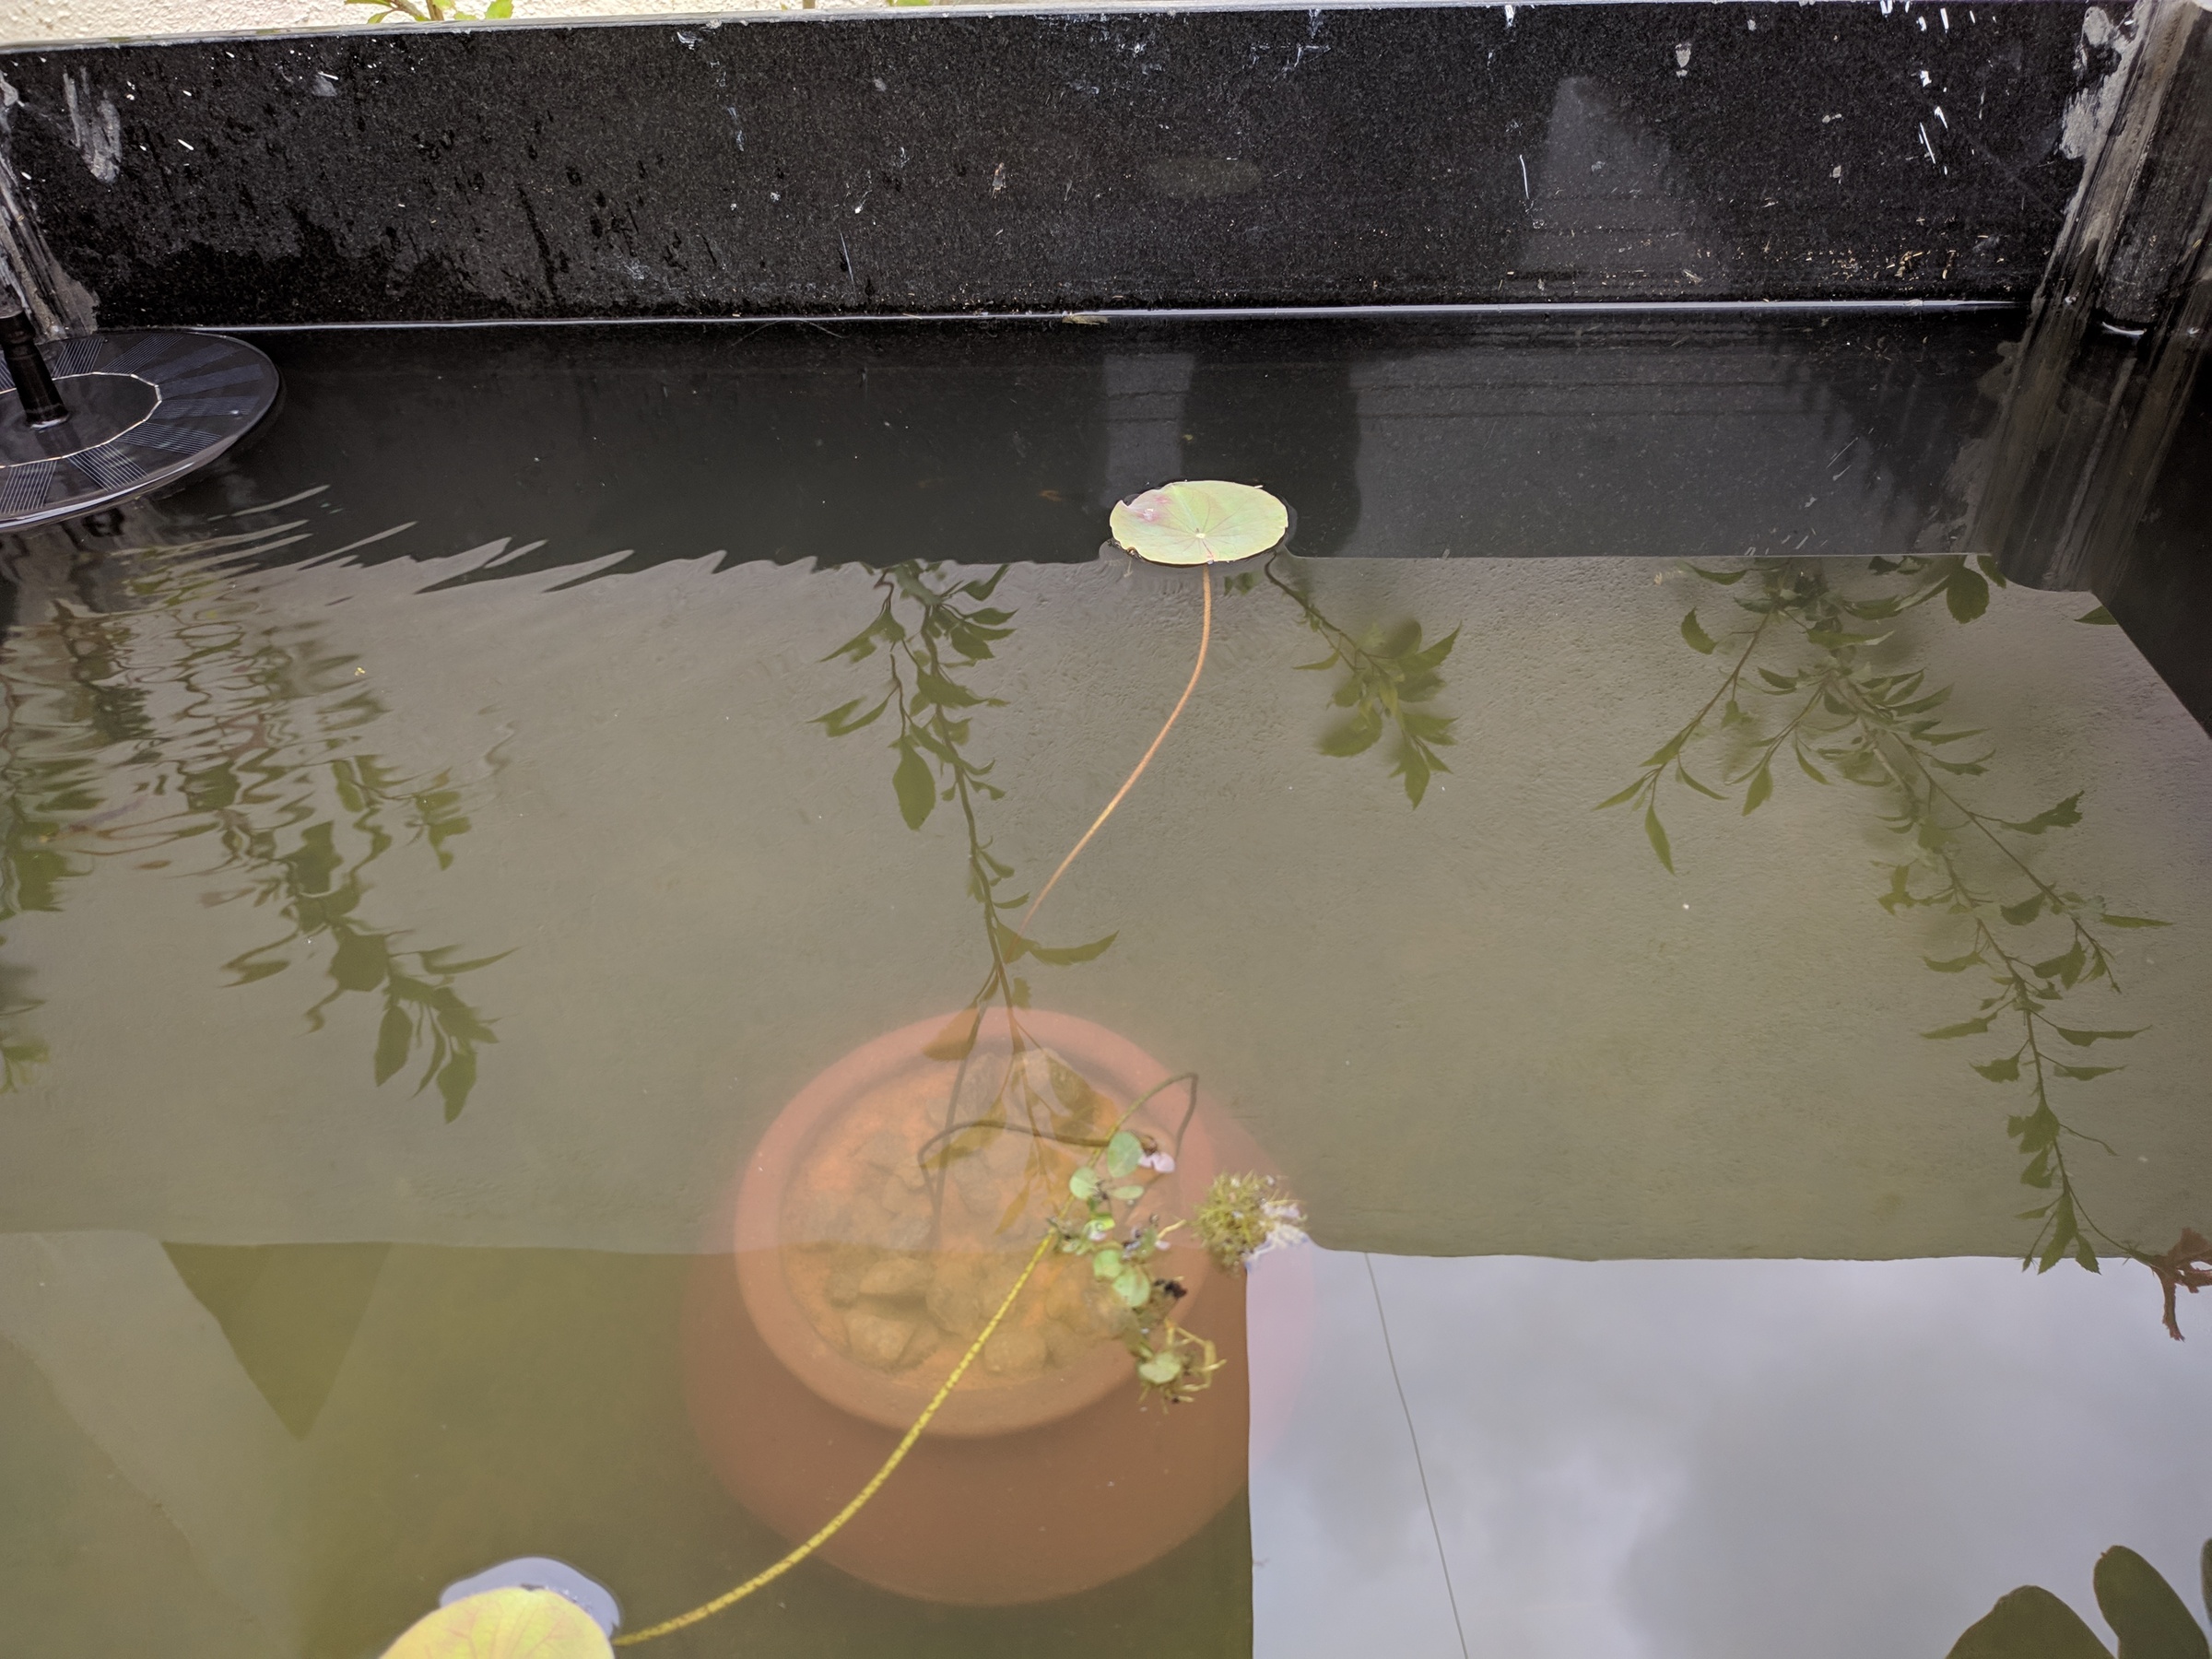 Initial Lotus growing in the sludge